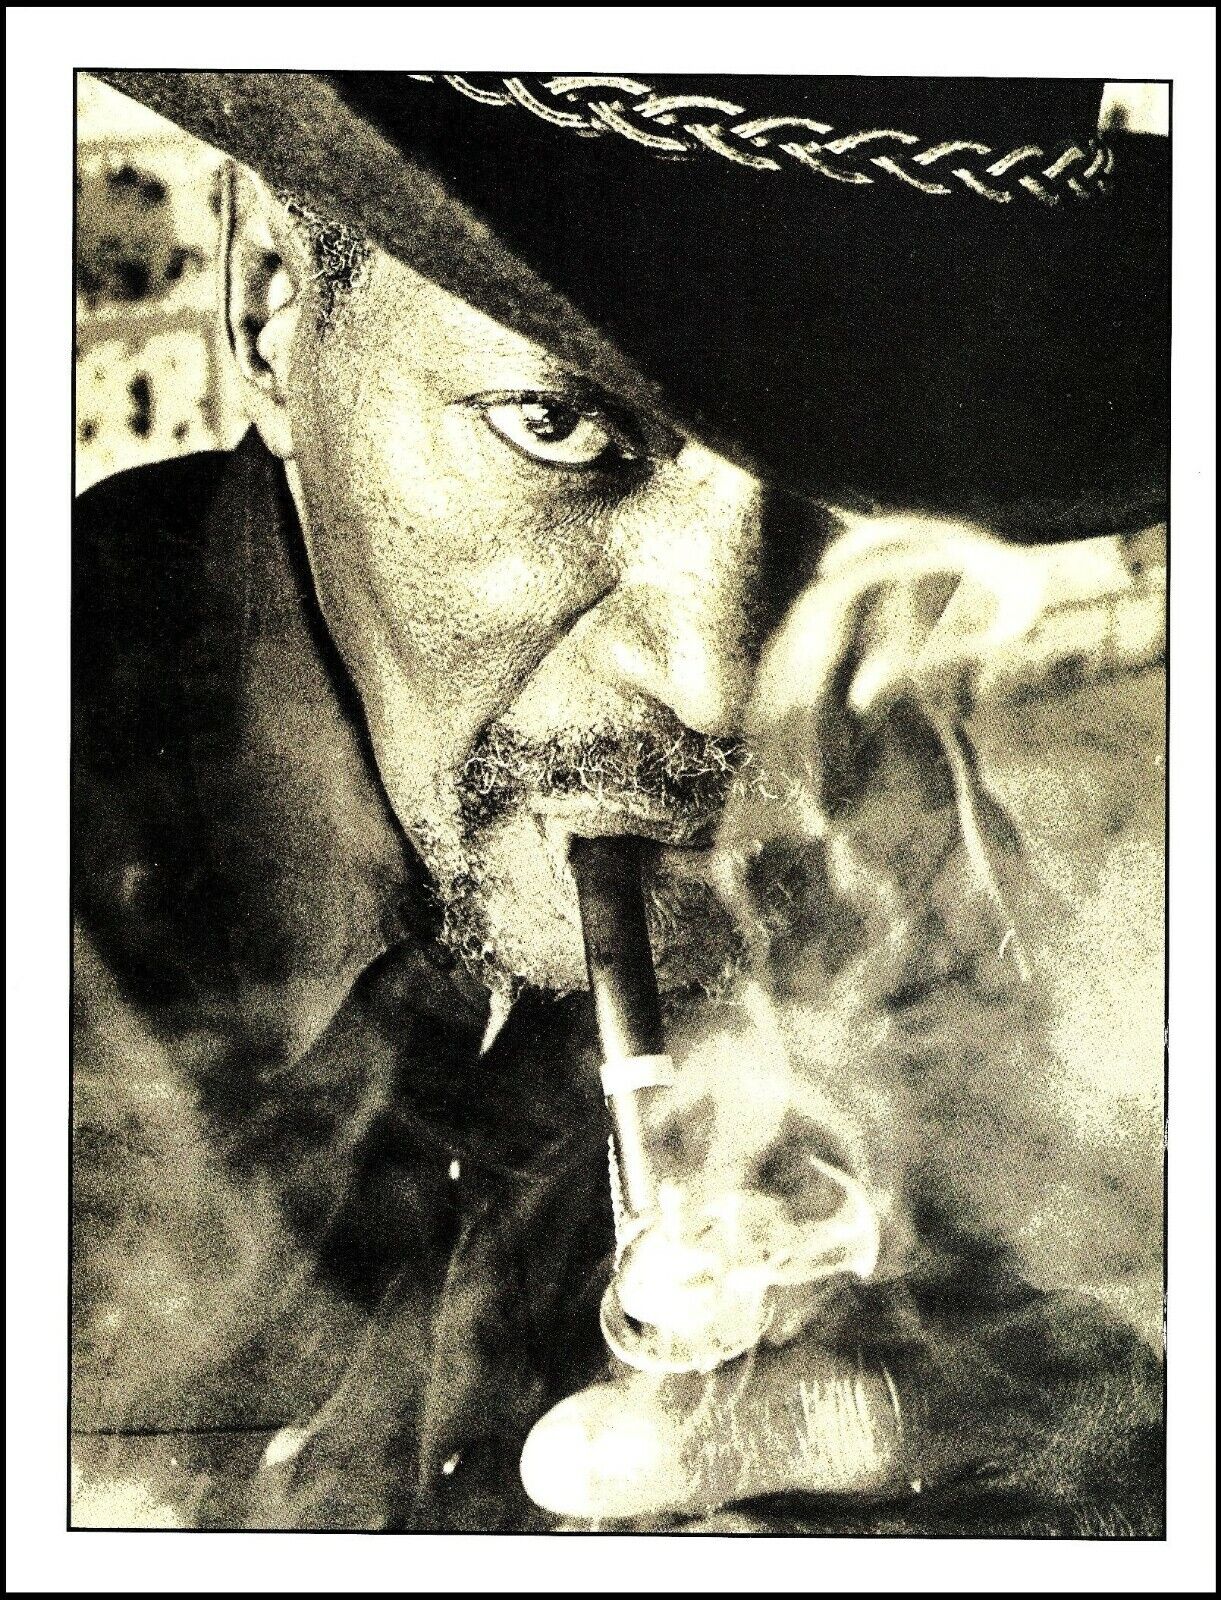 Clarence Gatemouth Brown smoking a pipe 1993 b/w pin-up photo print